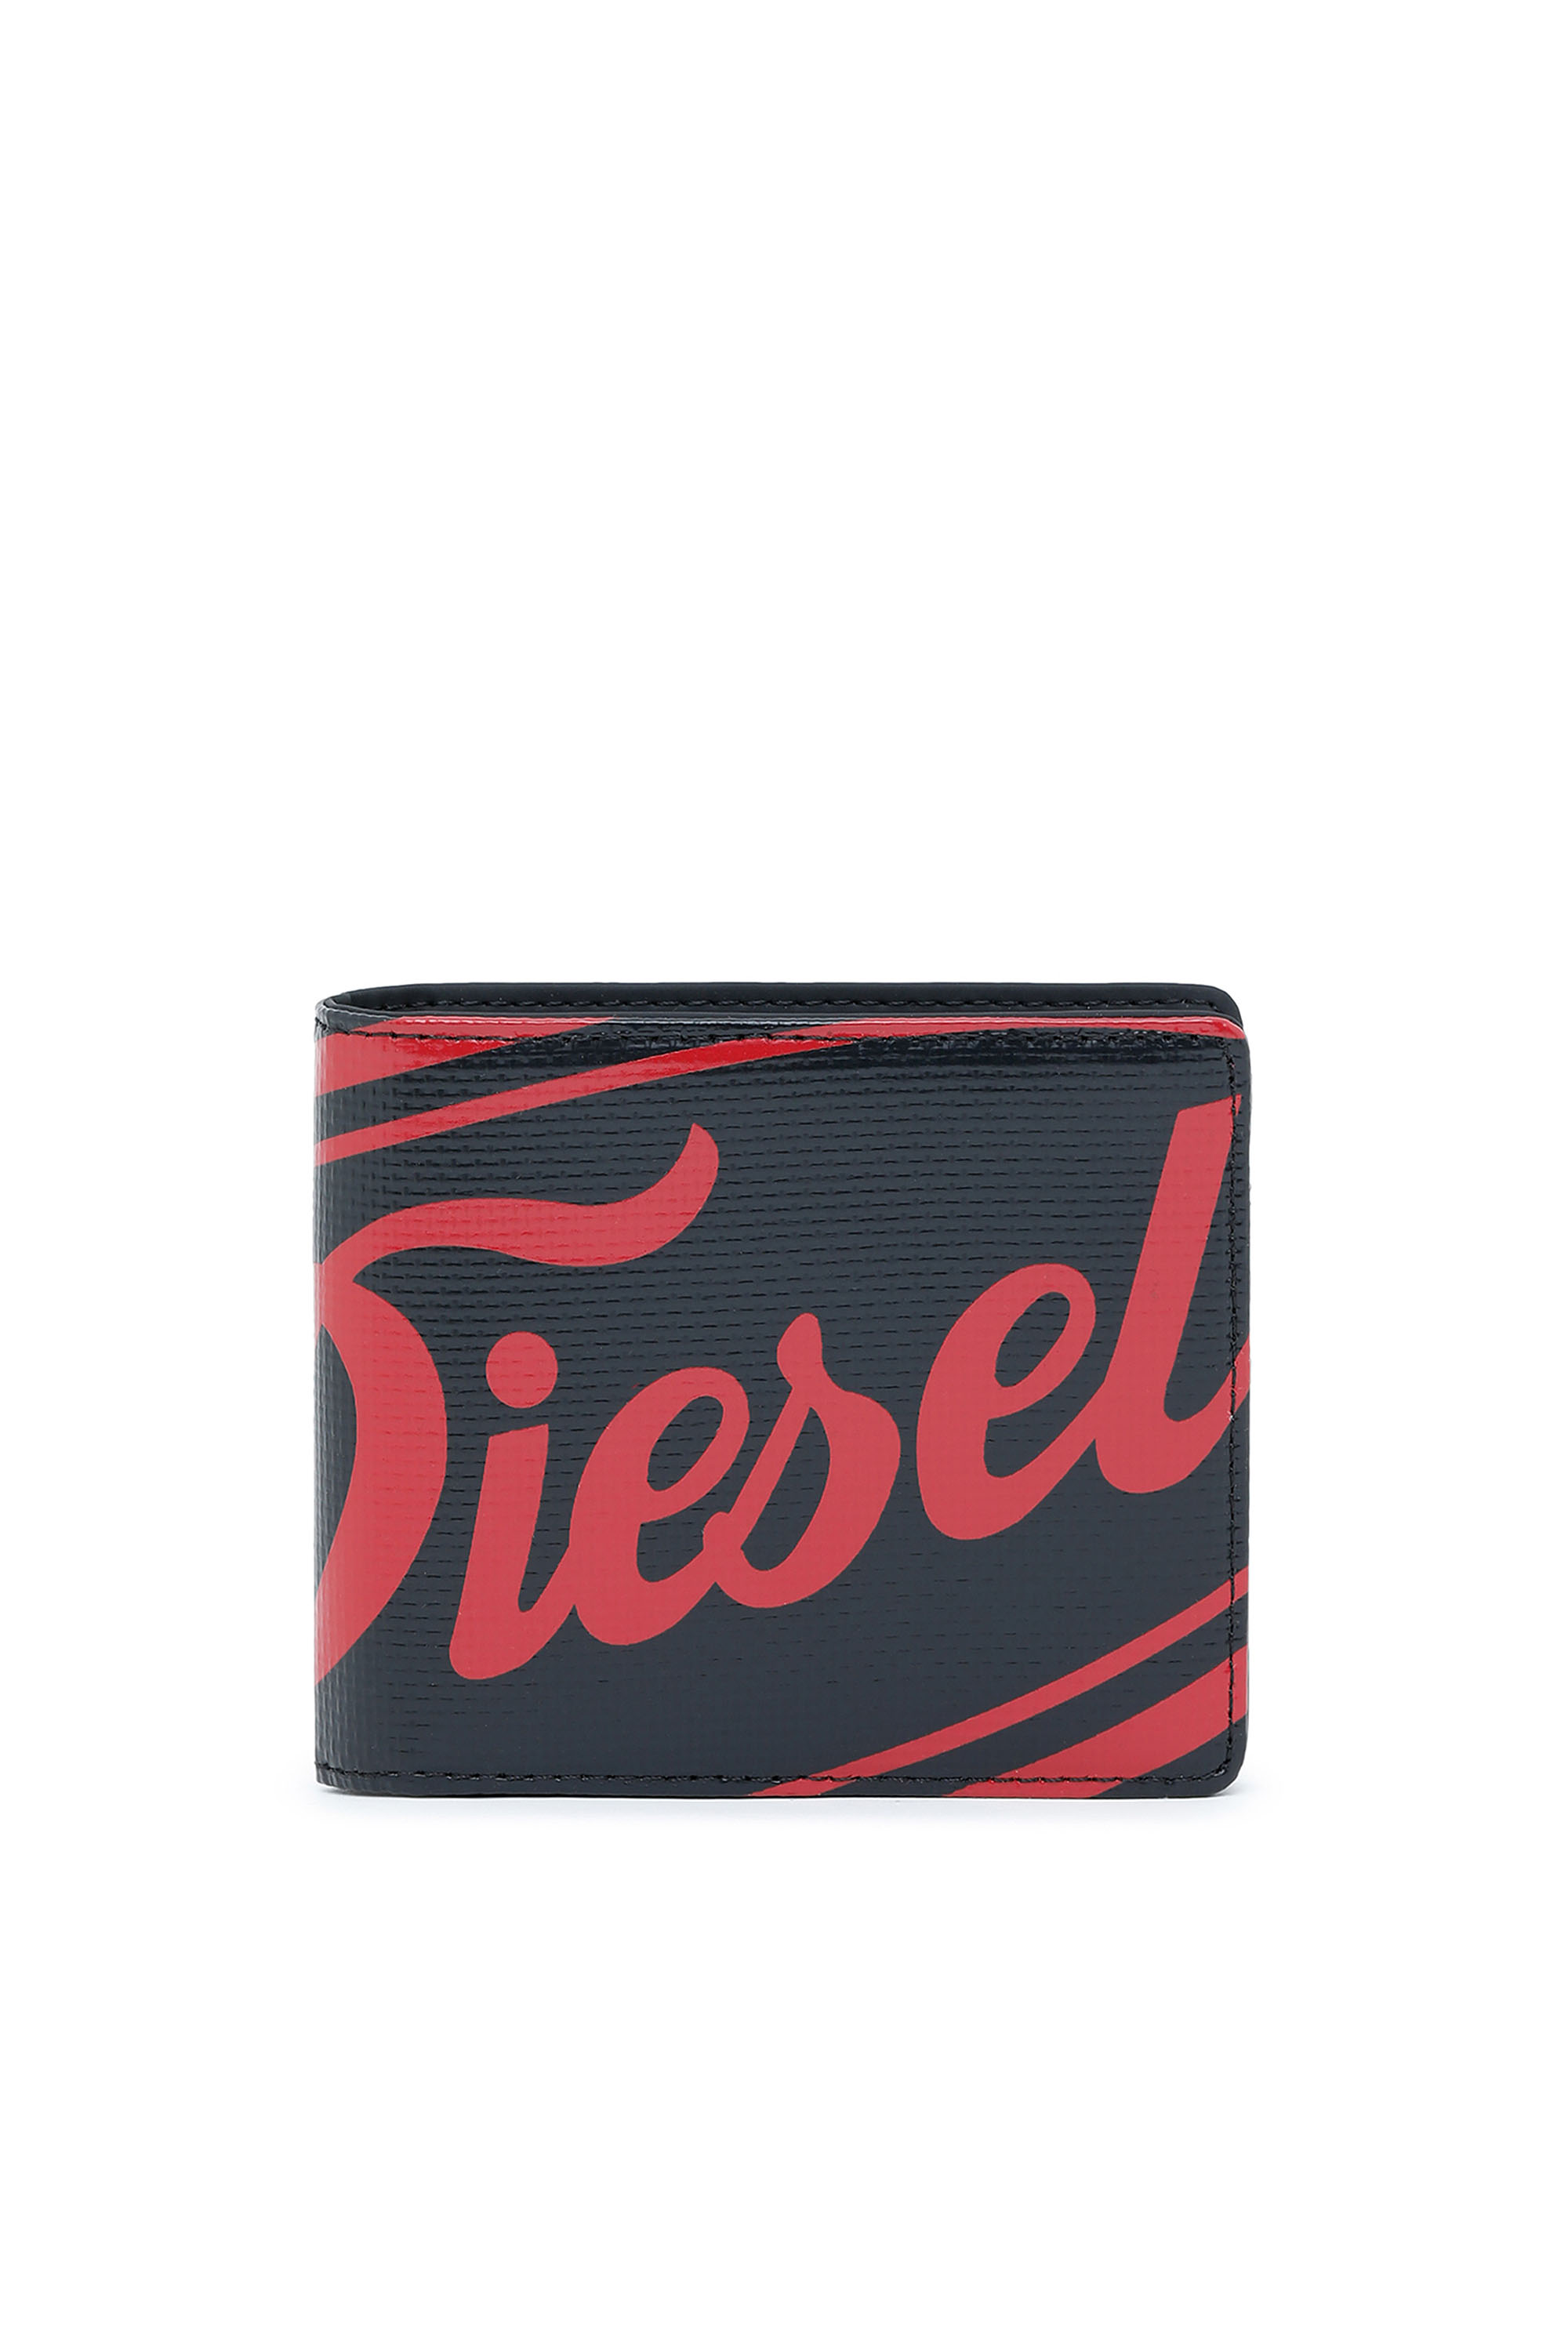 Diesel - HIRESH S, Noir - Image 1